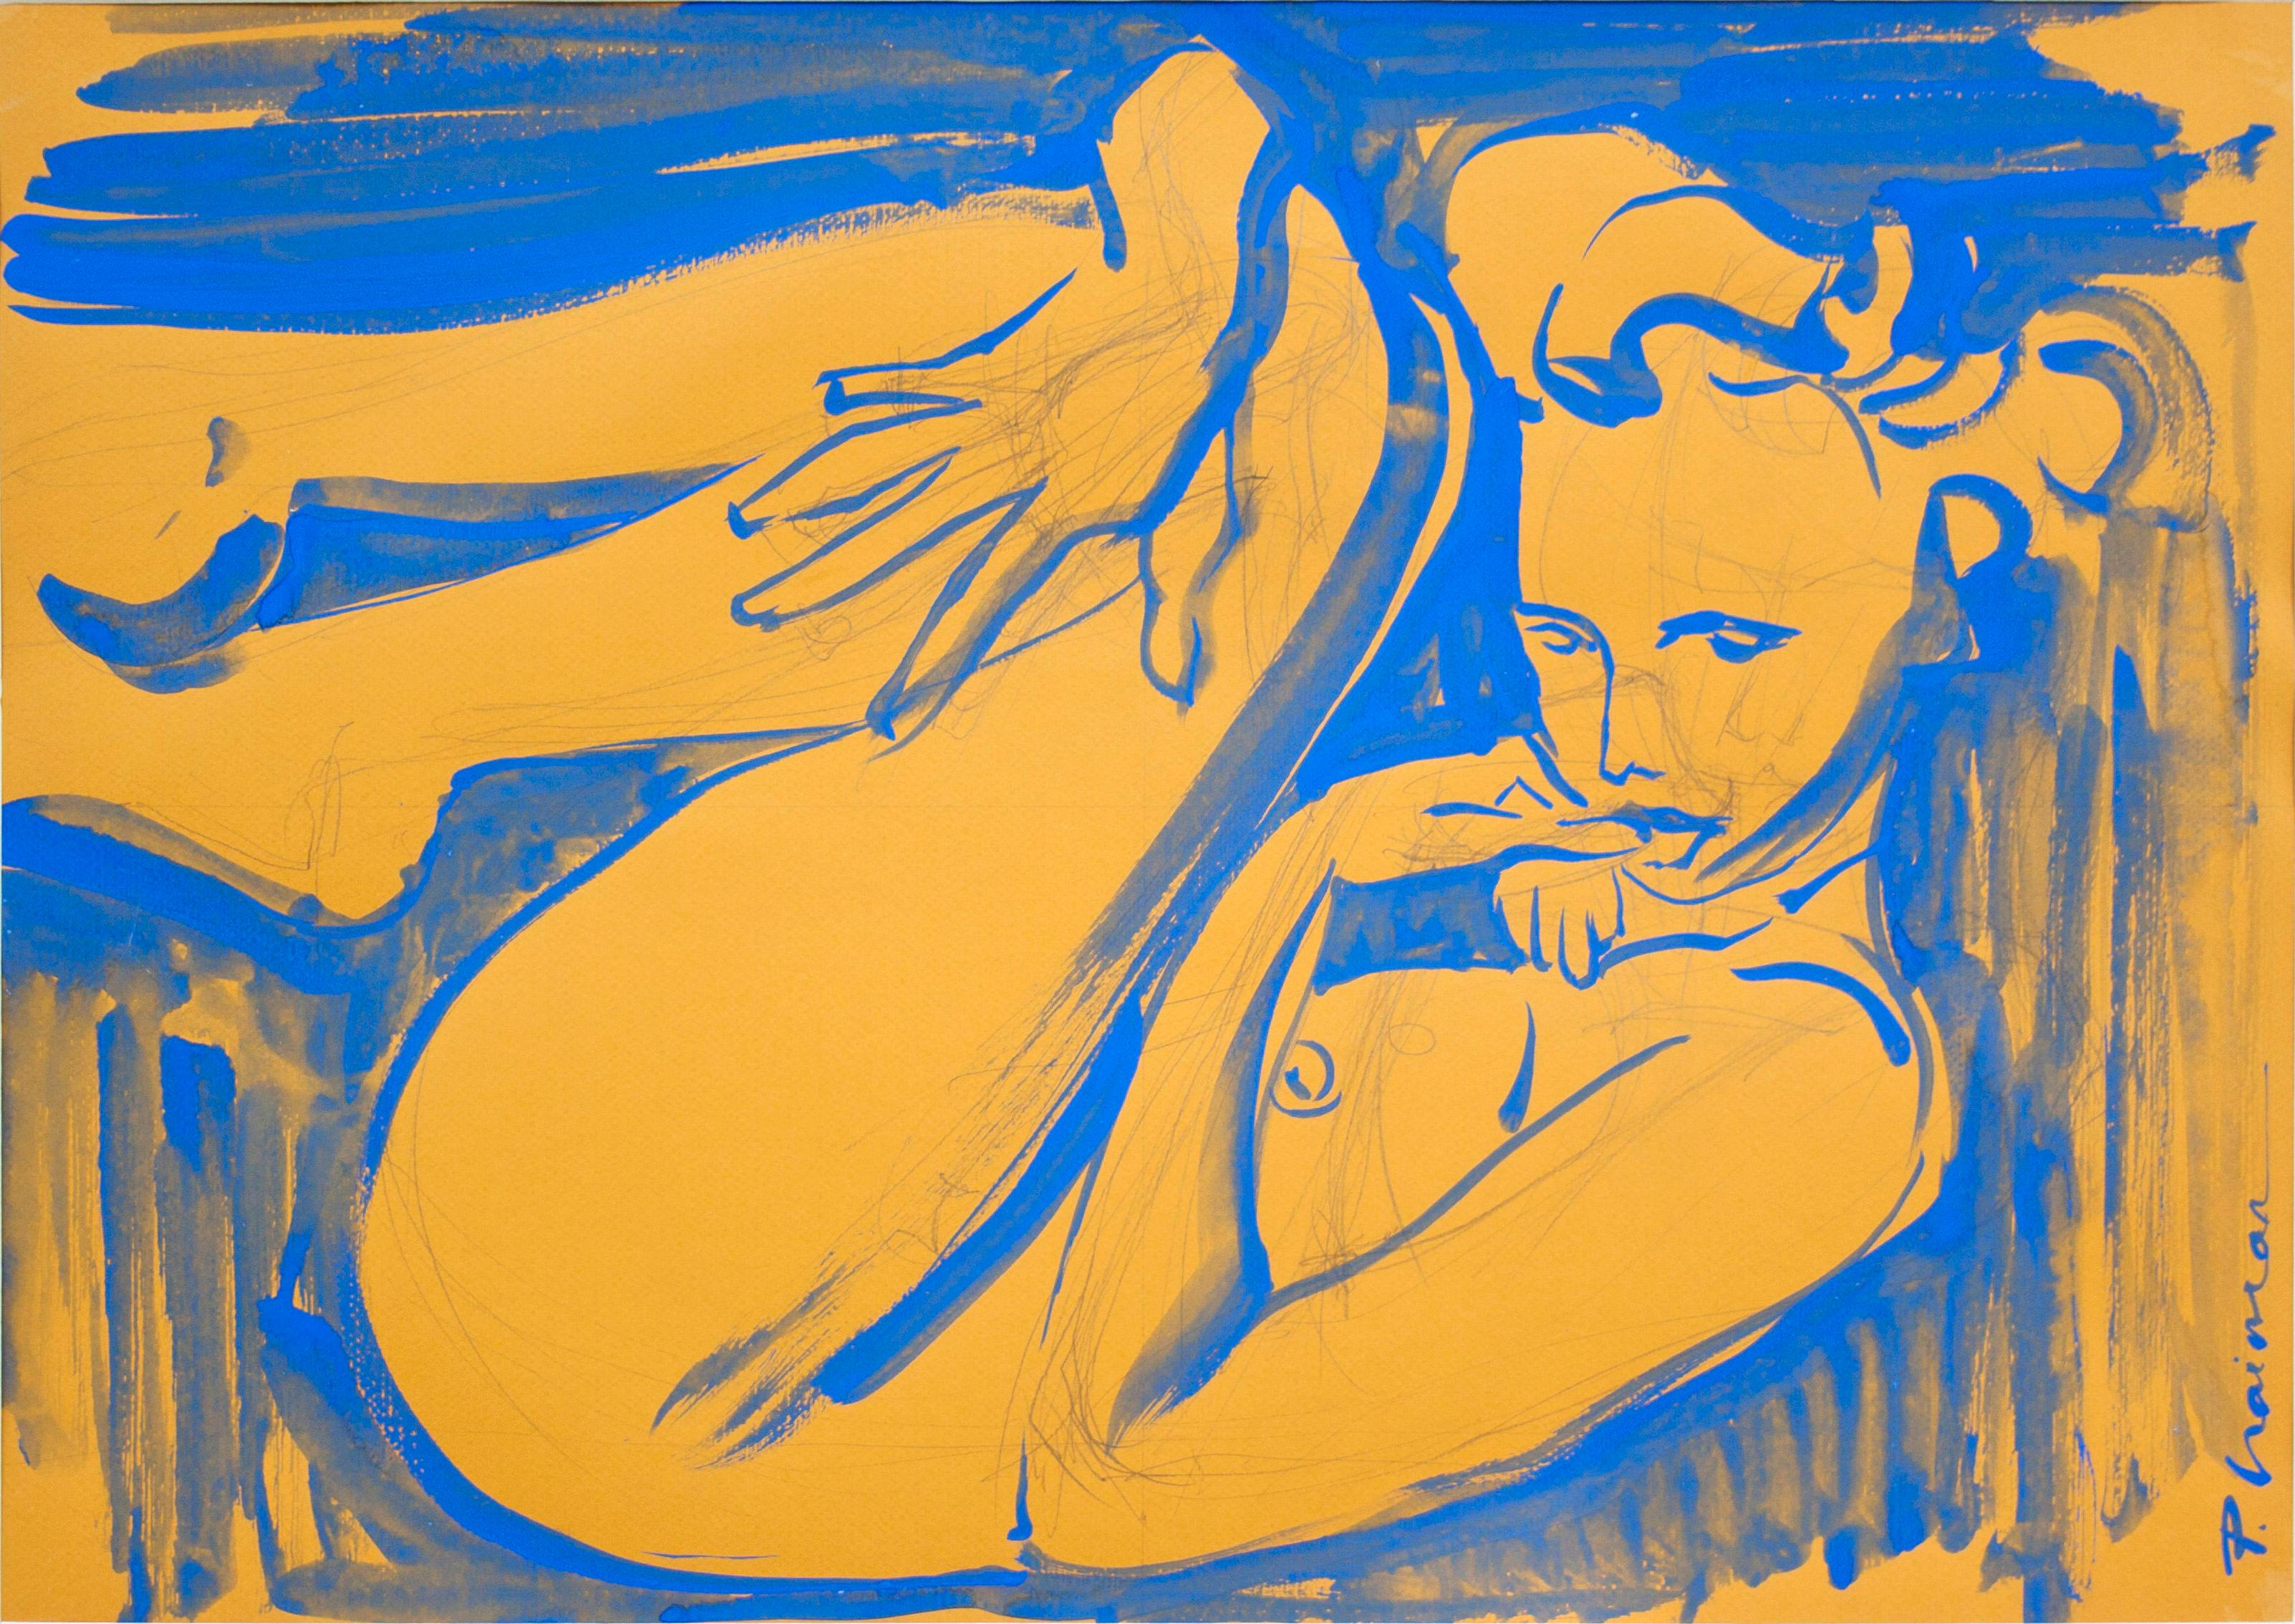 
Nu bleu. Inspiré par Matisse.
Une partie de ma série "Nu à l'intérieur".
Original, signé.
50x70cm / 20x28in taille réelle

encre, graphite, tempera sur papier
Envoi roulé dans un tube depuis New York, directement de l'artiste.